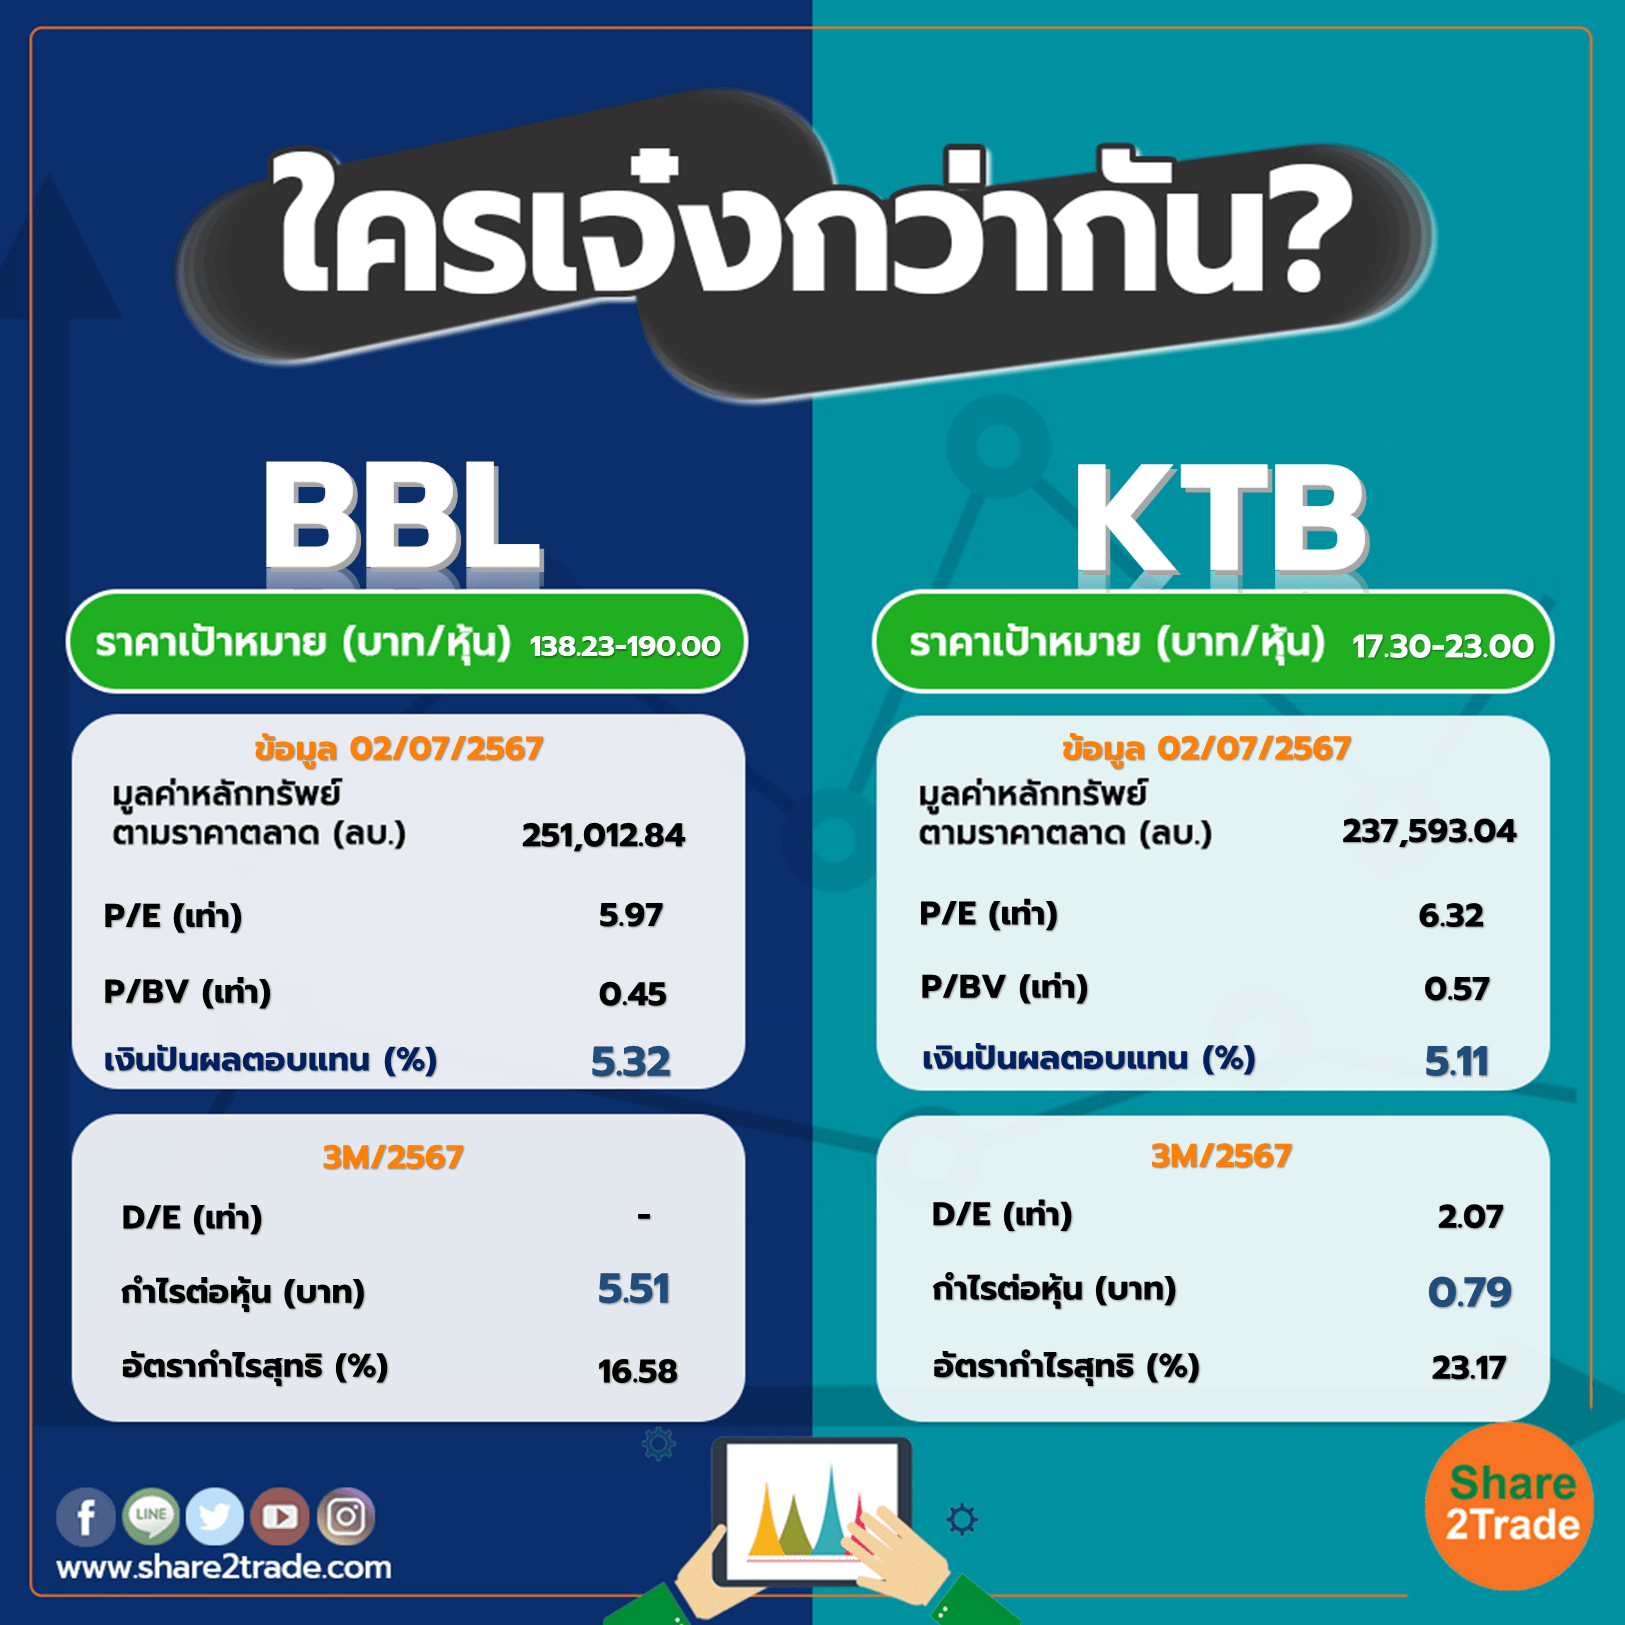 ใครเจ๋งกว่ากัน "BBL" VS "KTB"